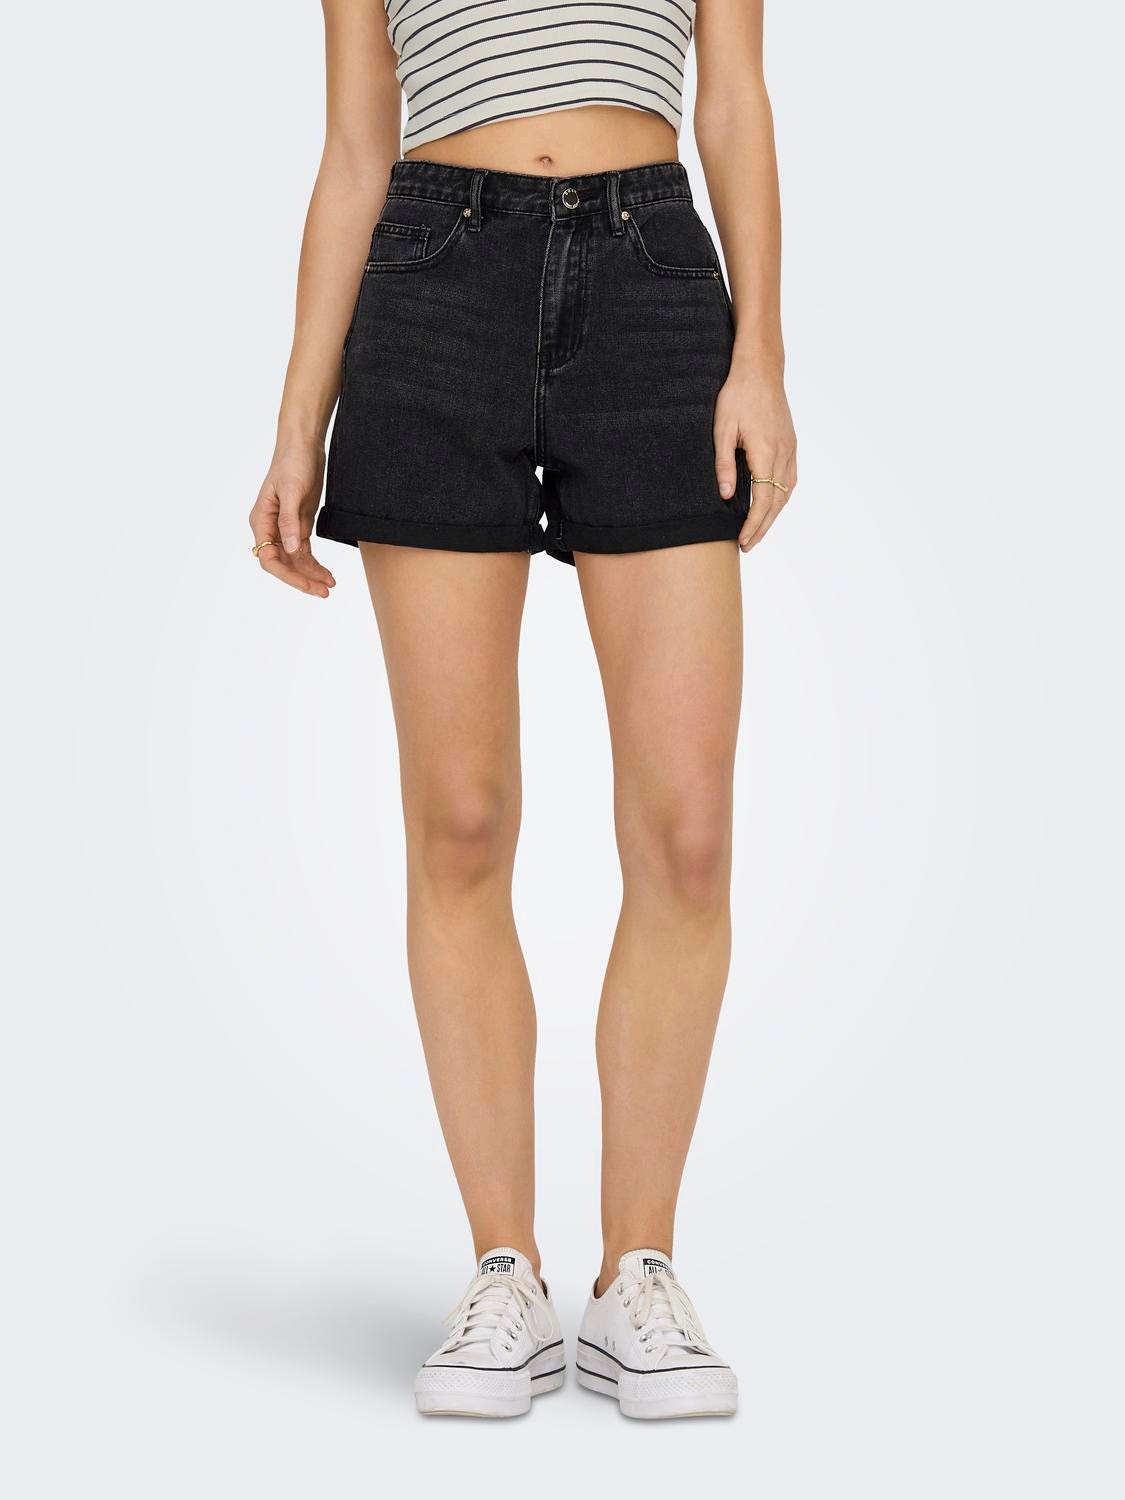 Jean Shorts and Black Bodysuit 👀 #tryon 